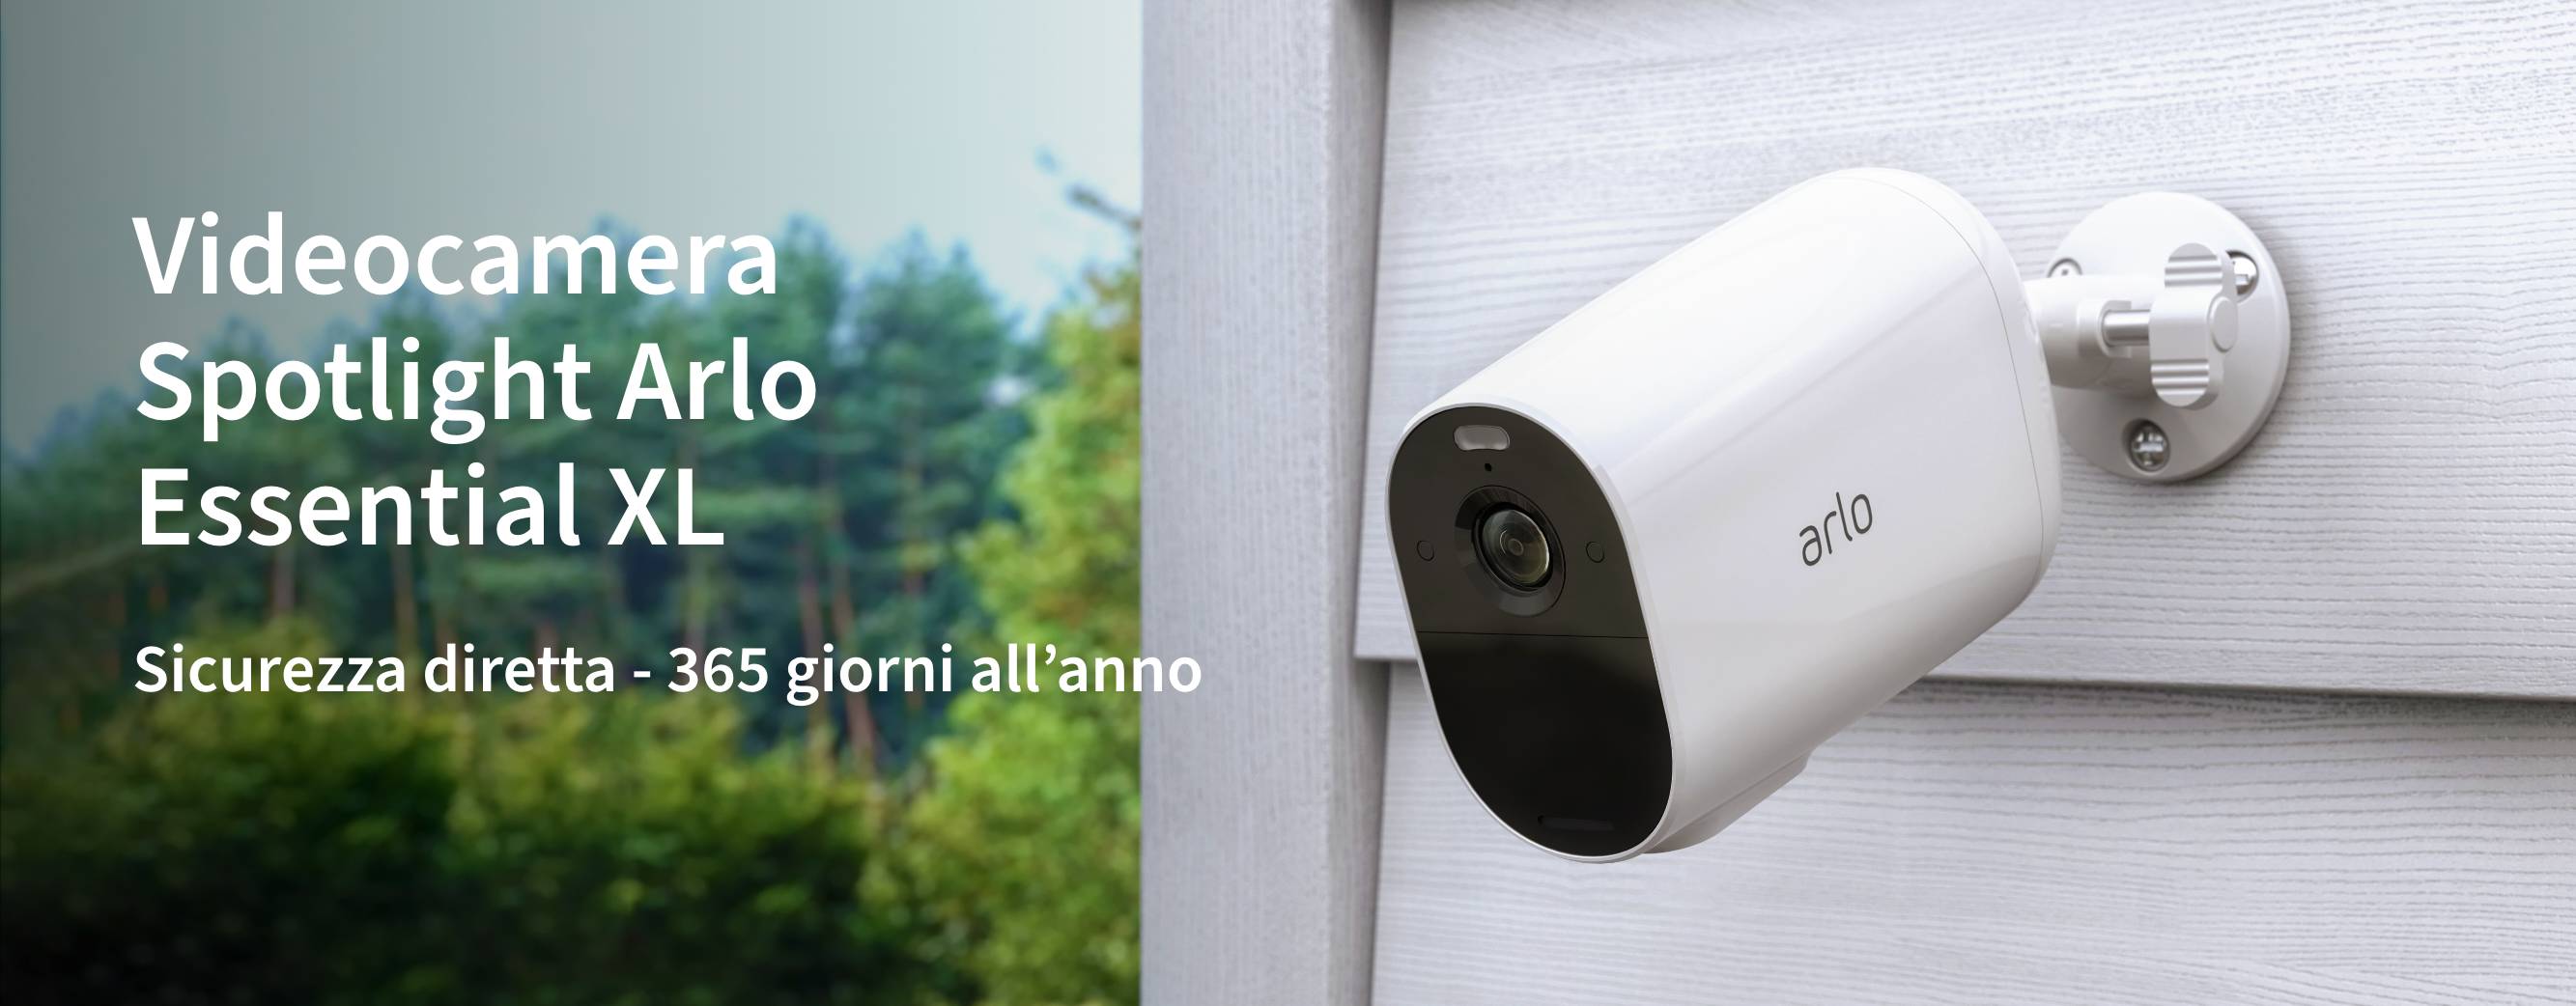 Una videocamera di sicurezza Arlo Essential XL all'esterno su una recinzione ti offre una sicurezza domestica semplice